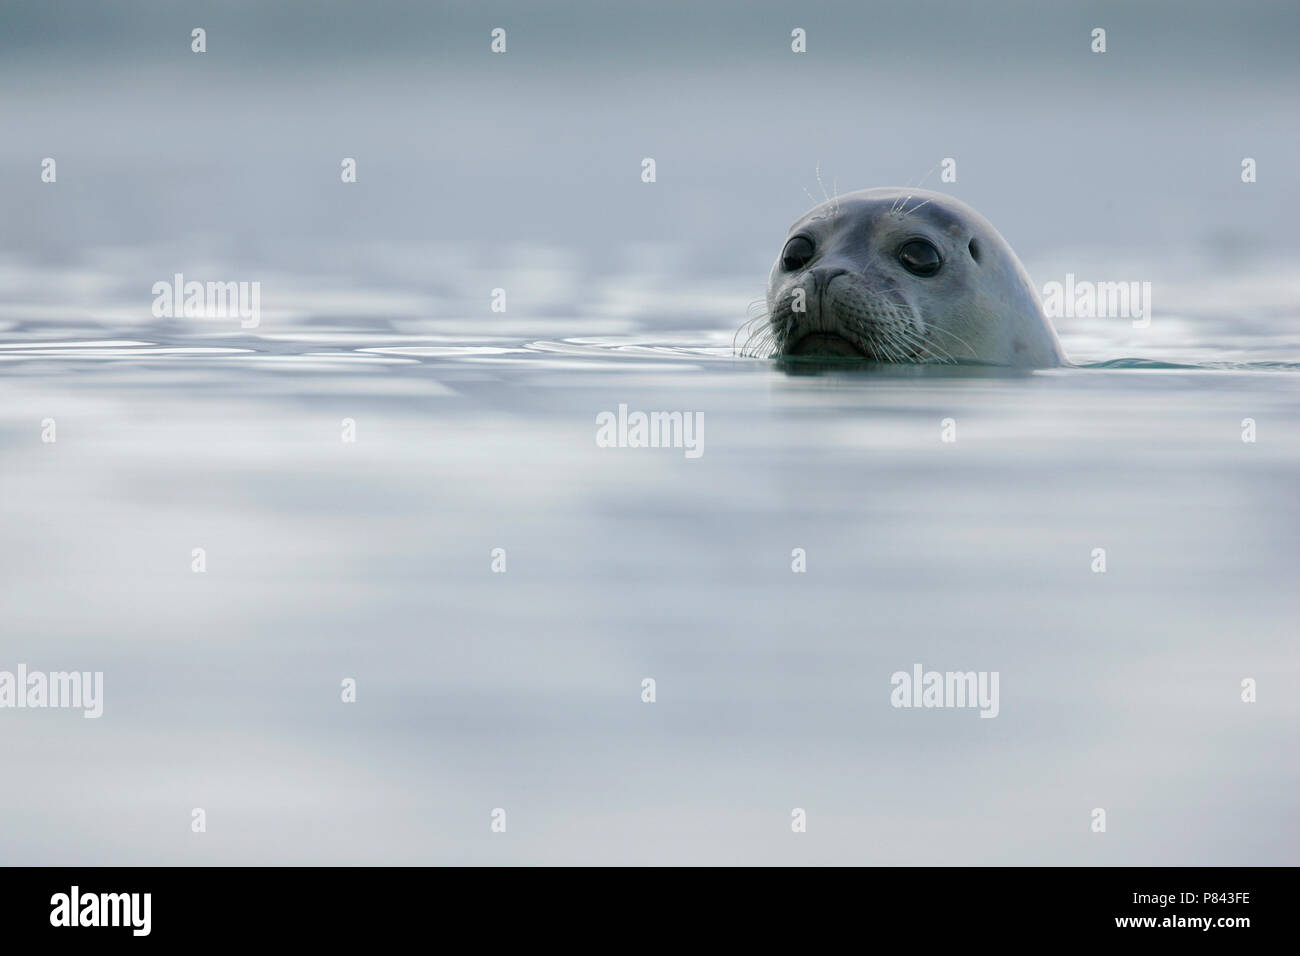 Gewone zeehond met kop zichtbaar; Common Seal with head visible Stock Photo